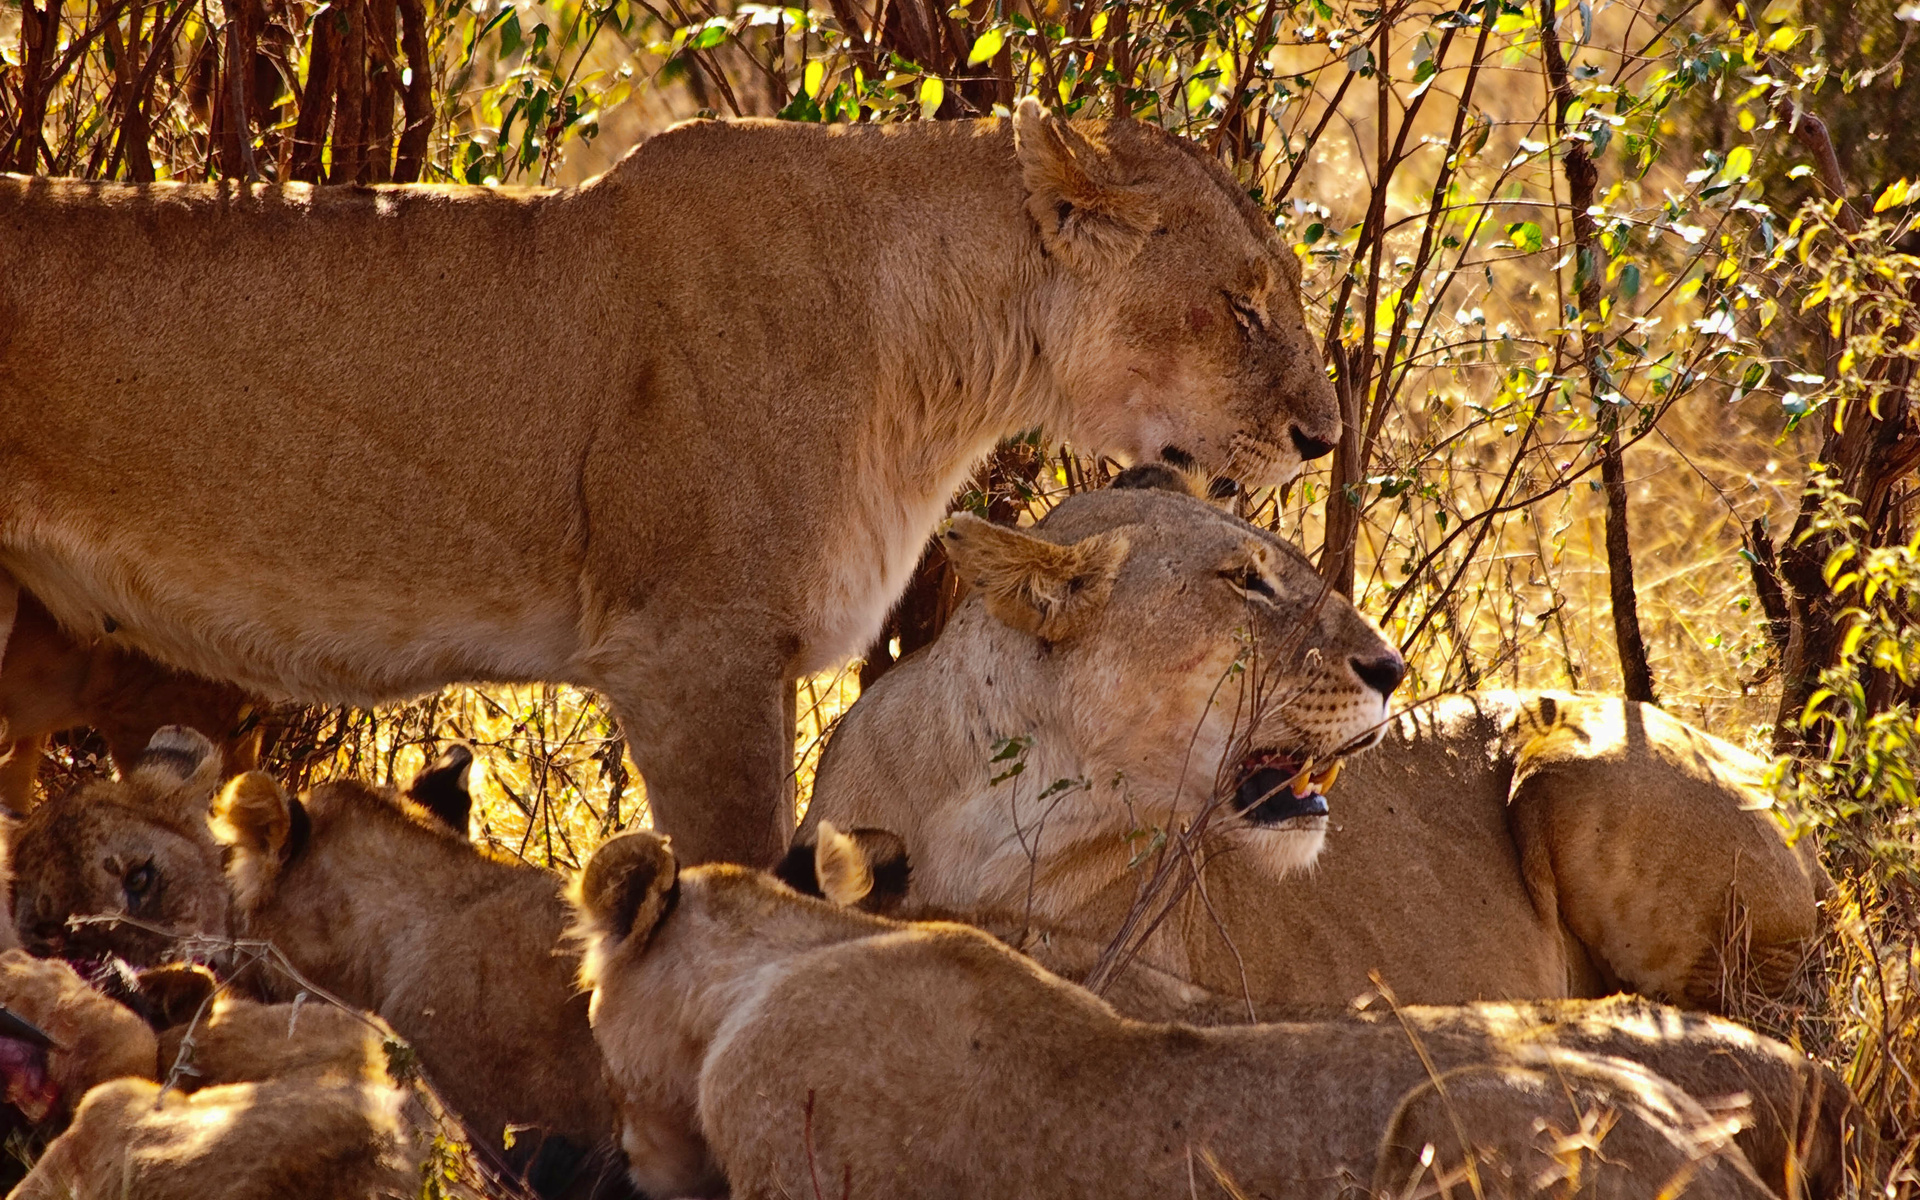 lions, Babies, Cubs, Africa Wallpaper